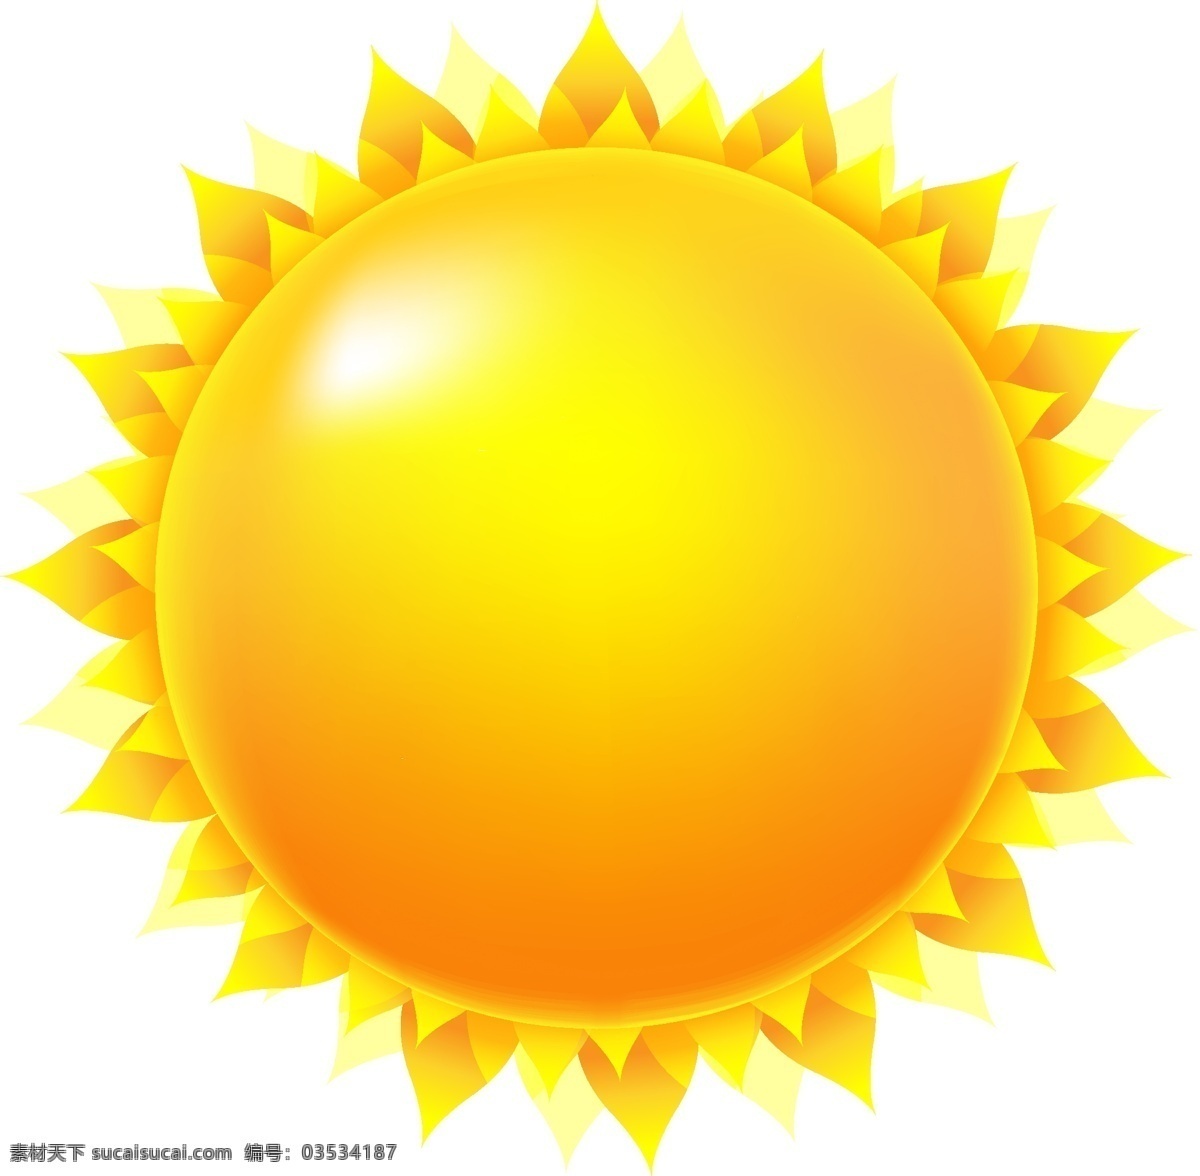 圆圆 太阳 矢量 合集 阳光 源文件 高清 免费素材 金黄 灿烂 图片图案 设计图案 下载素材